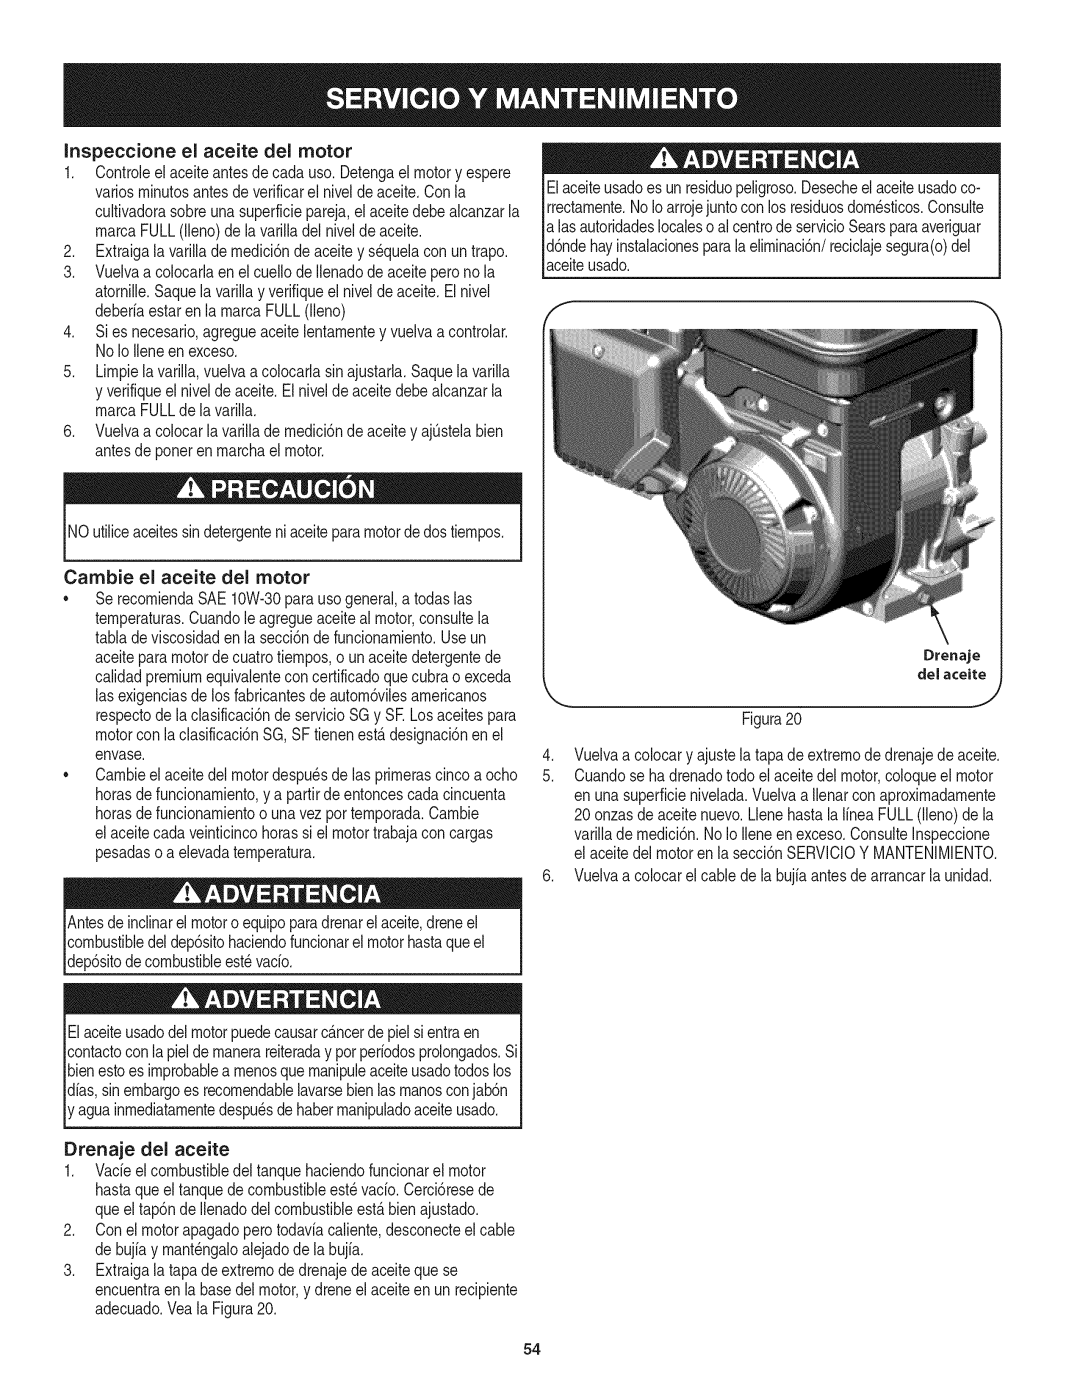 Craftsman 247.29931 manual Inspeccione el aceite del motor 